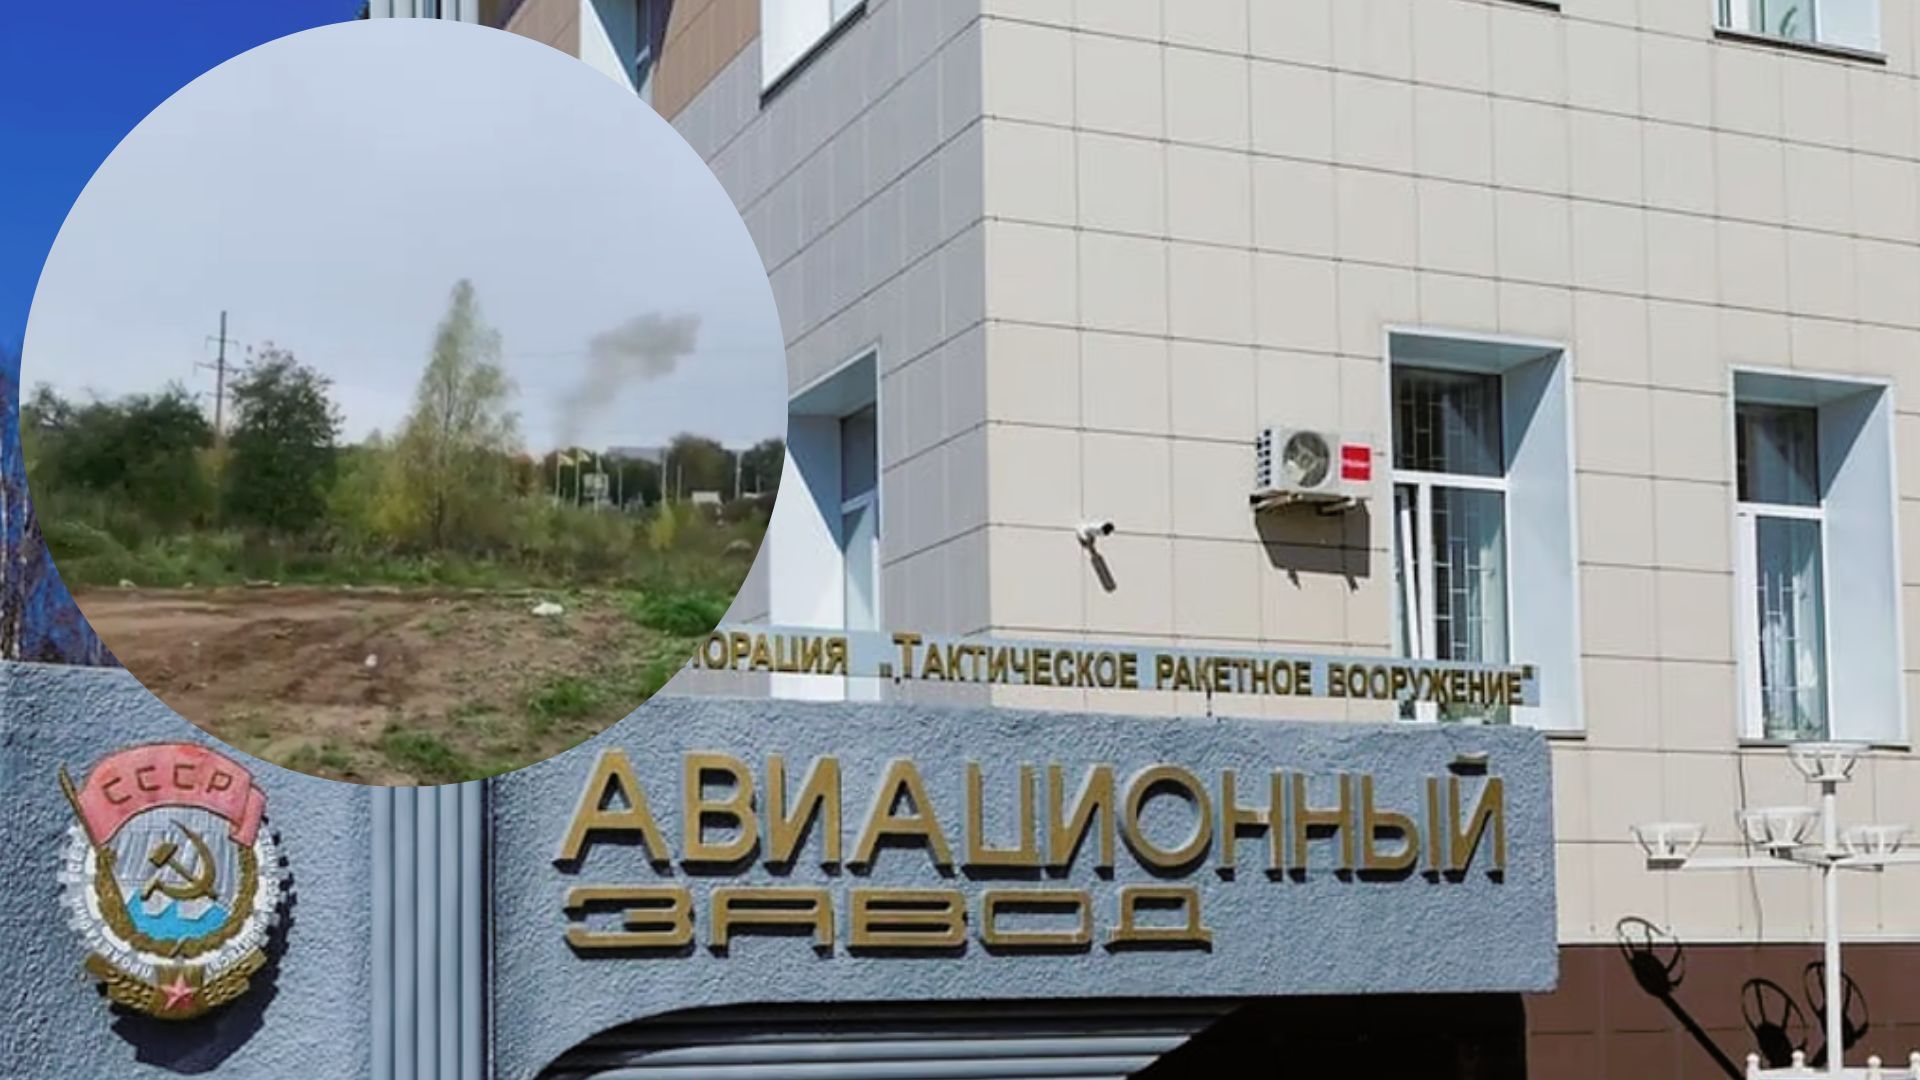 Момент удара дронов по авиазаводу в Смоленске попал на видео